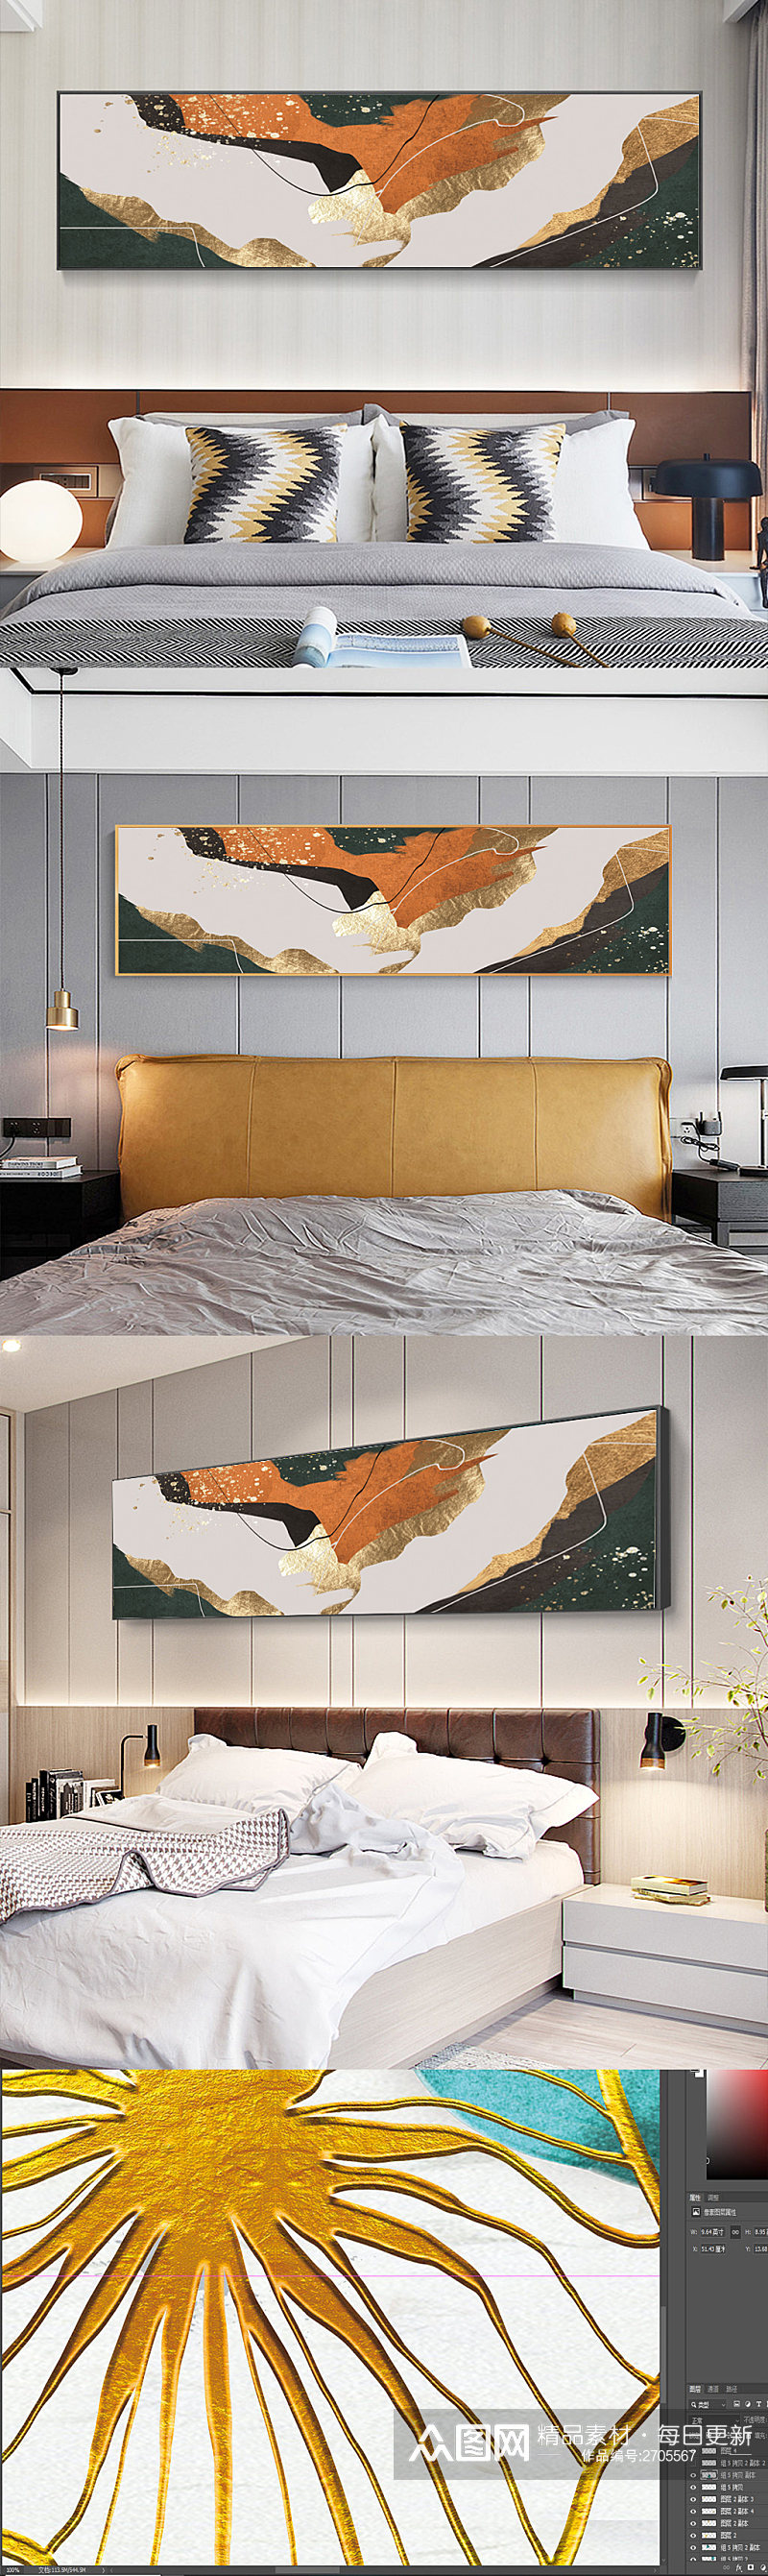 客厅床头沙发墙抽象手绘金箔艺术装饰画素材